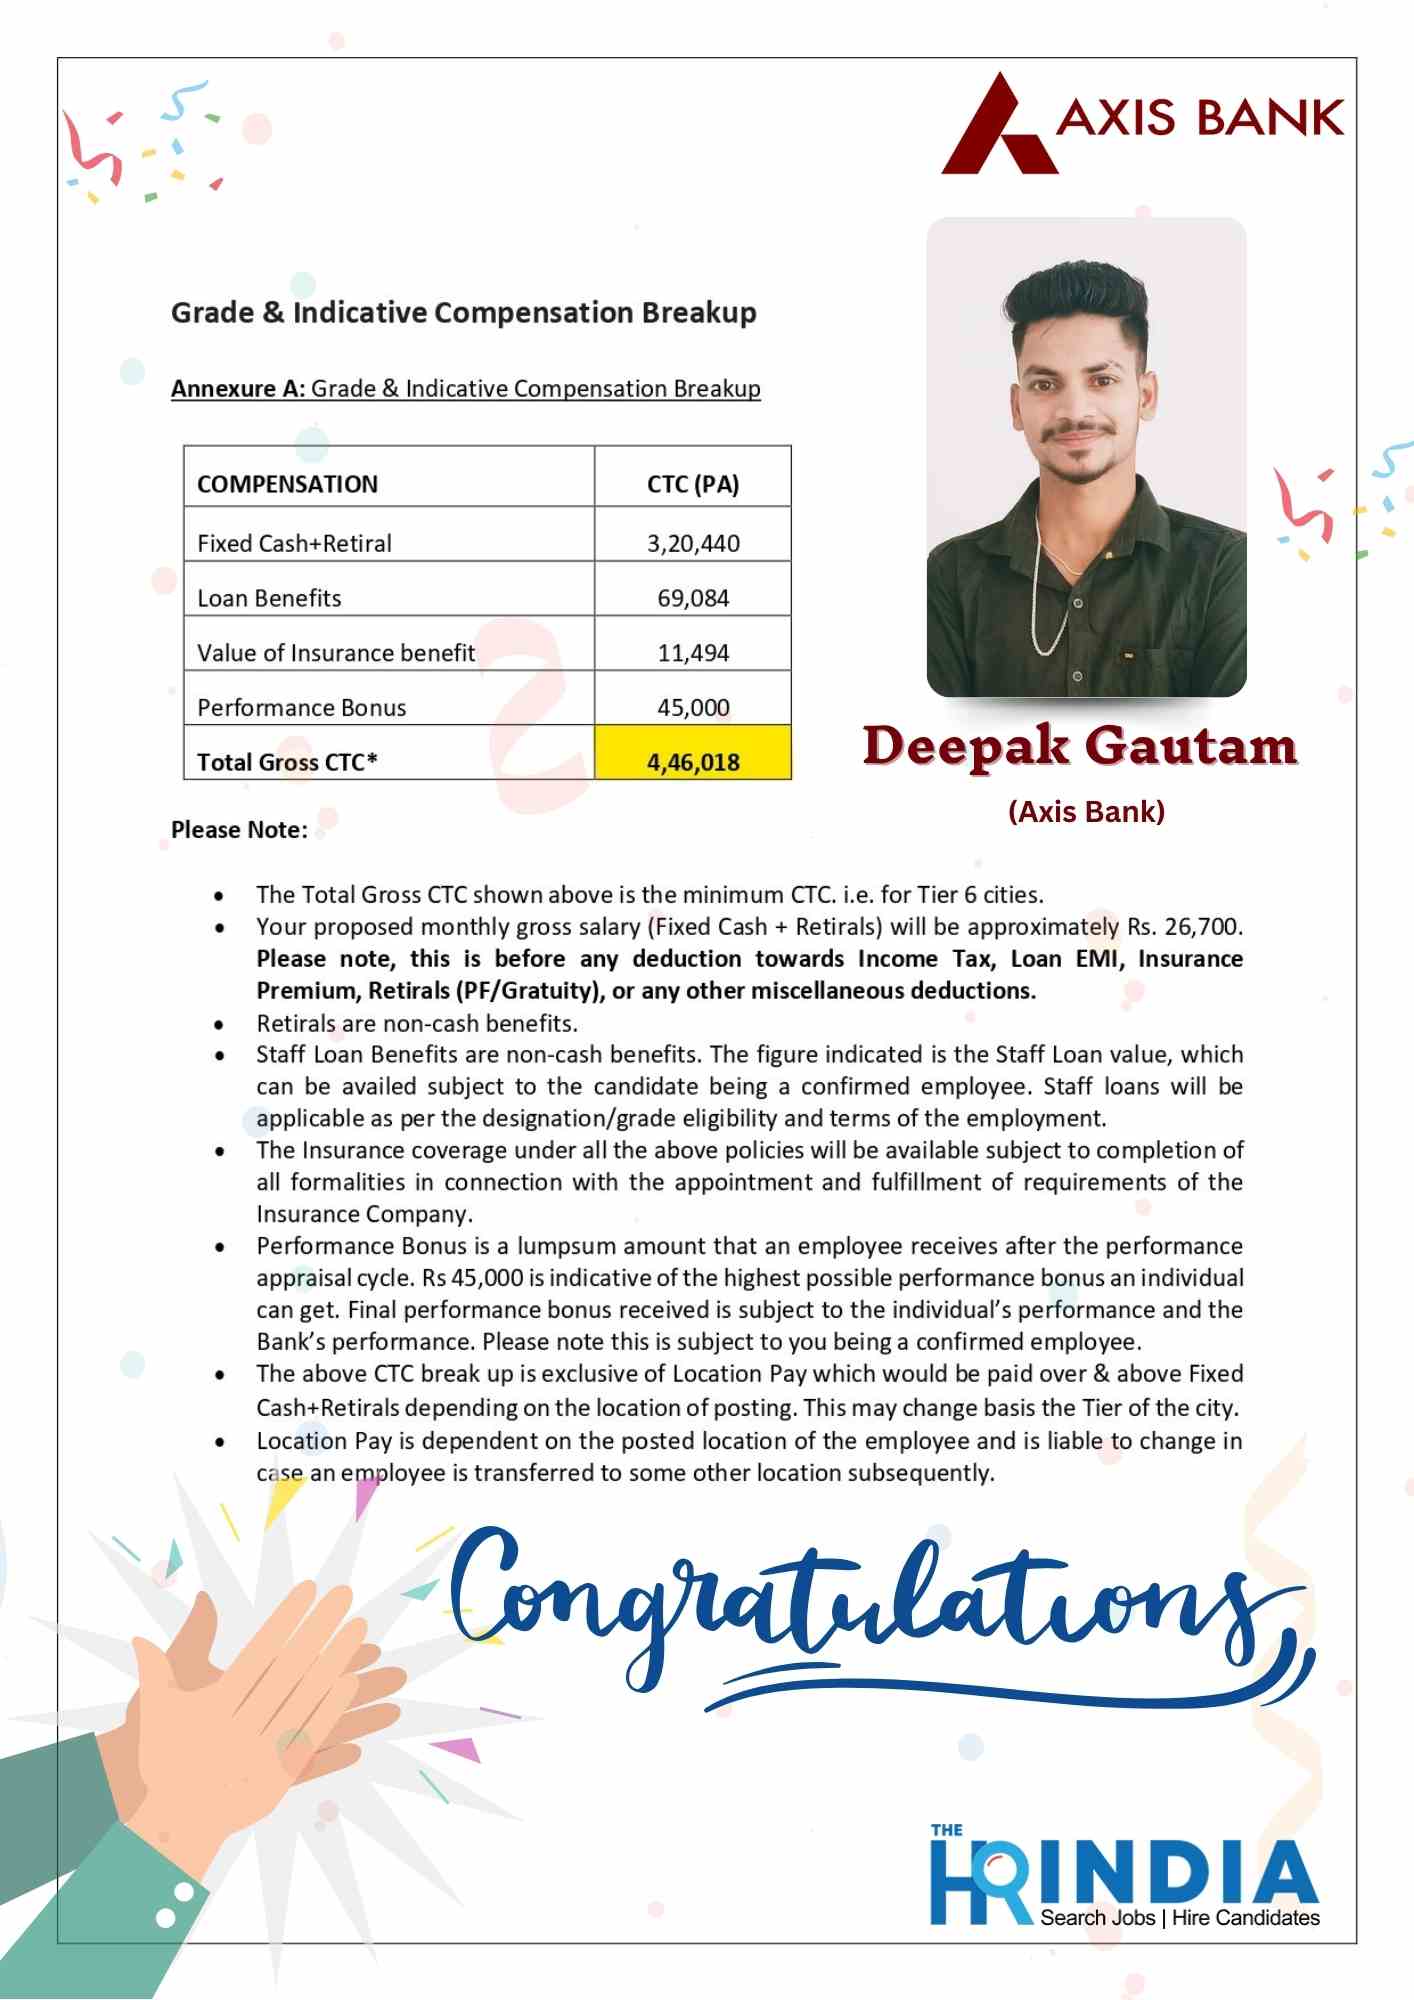 Deepak Gautam  | The HR India